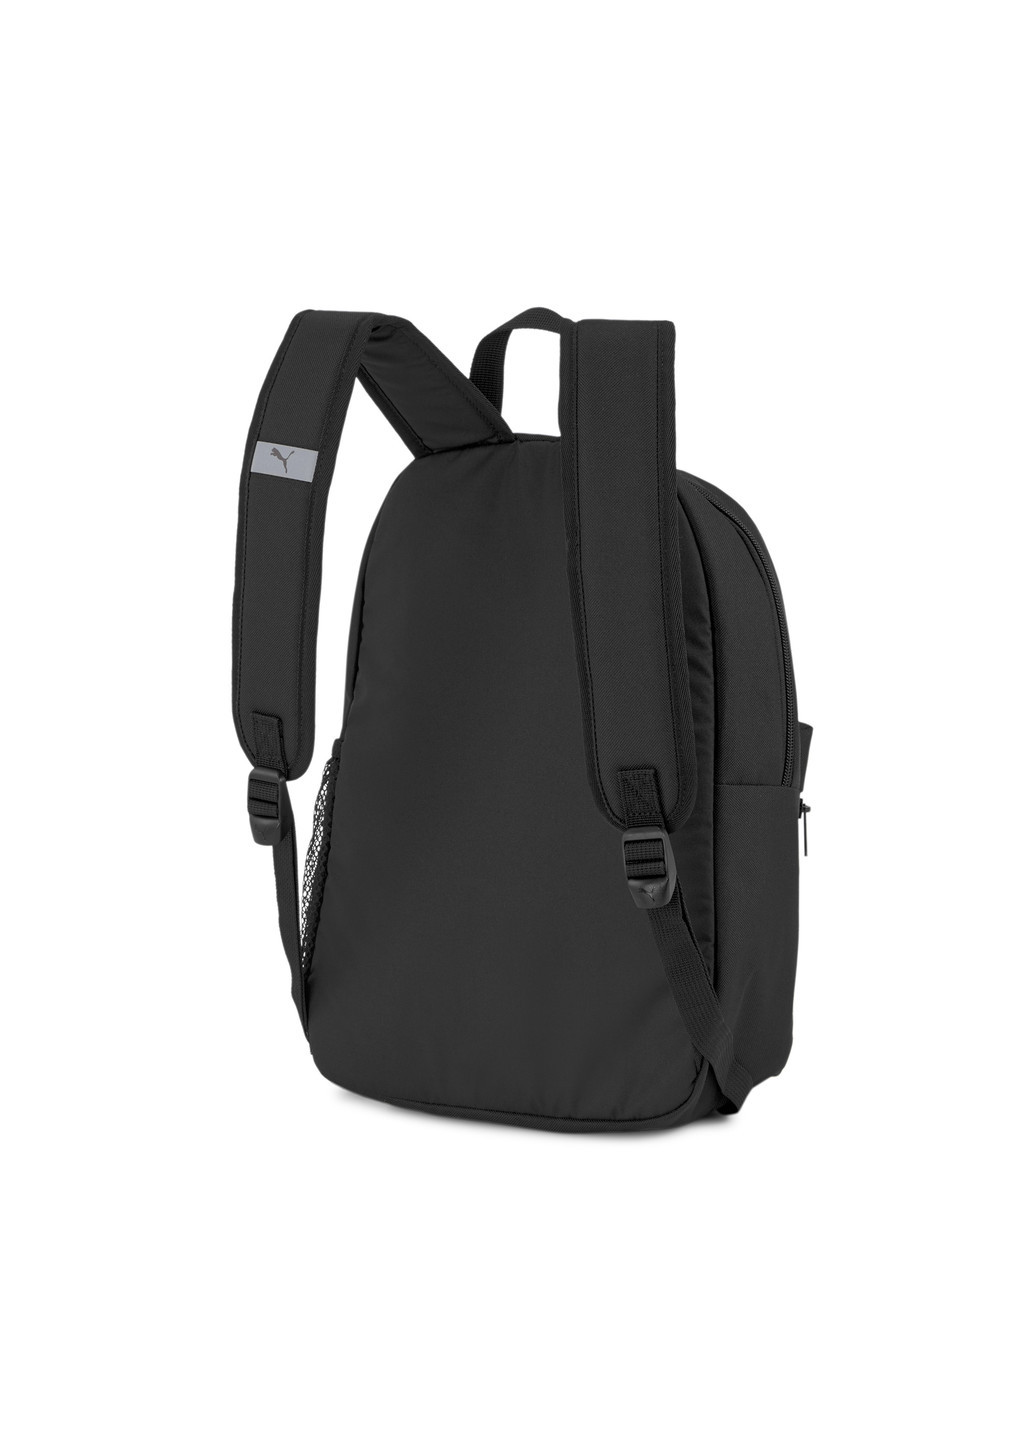 Детский рюкзак Phase Small Youth Backpack Puma однотонный чёрный спортивный